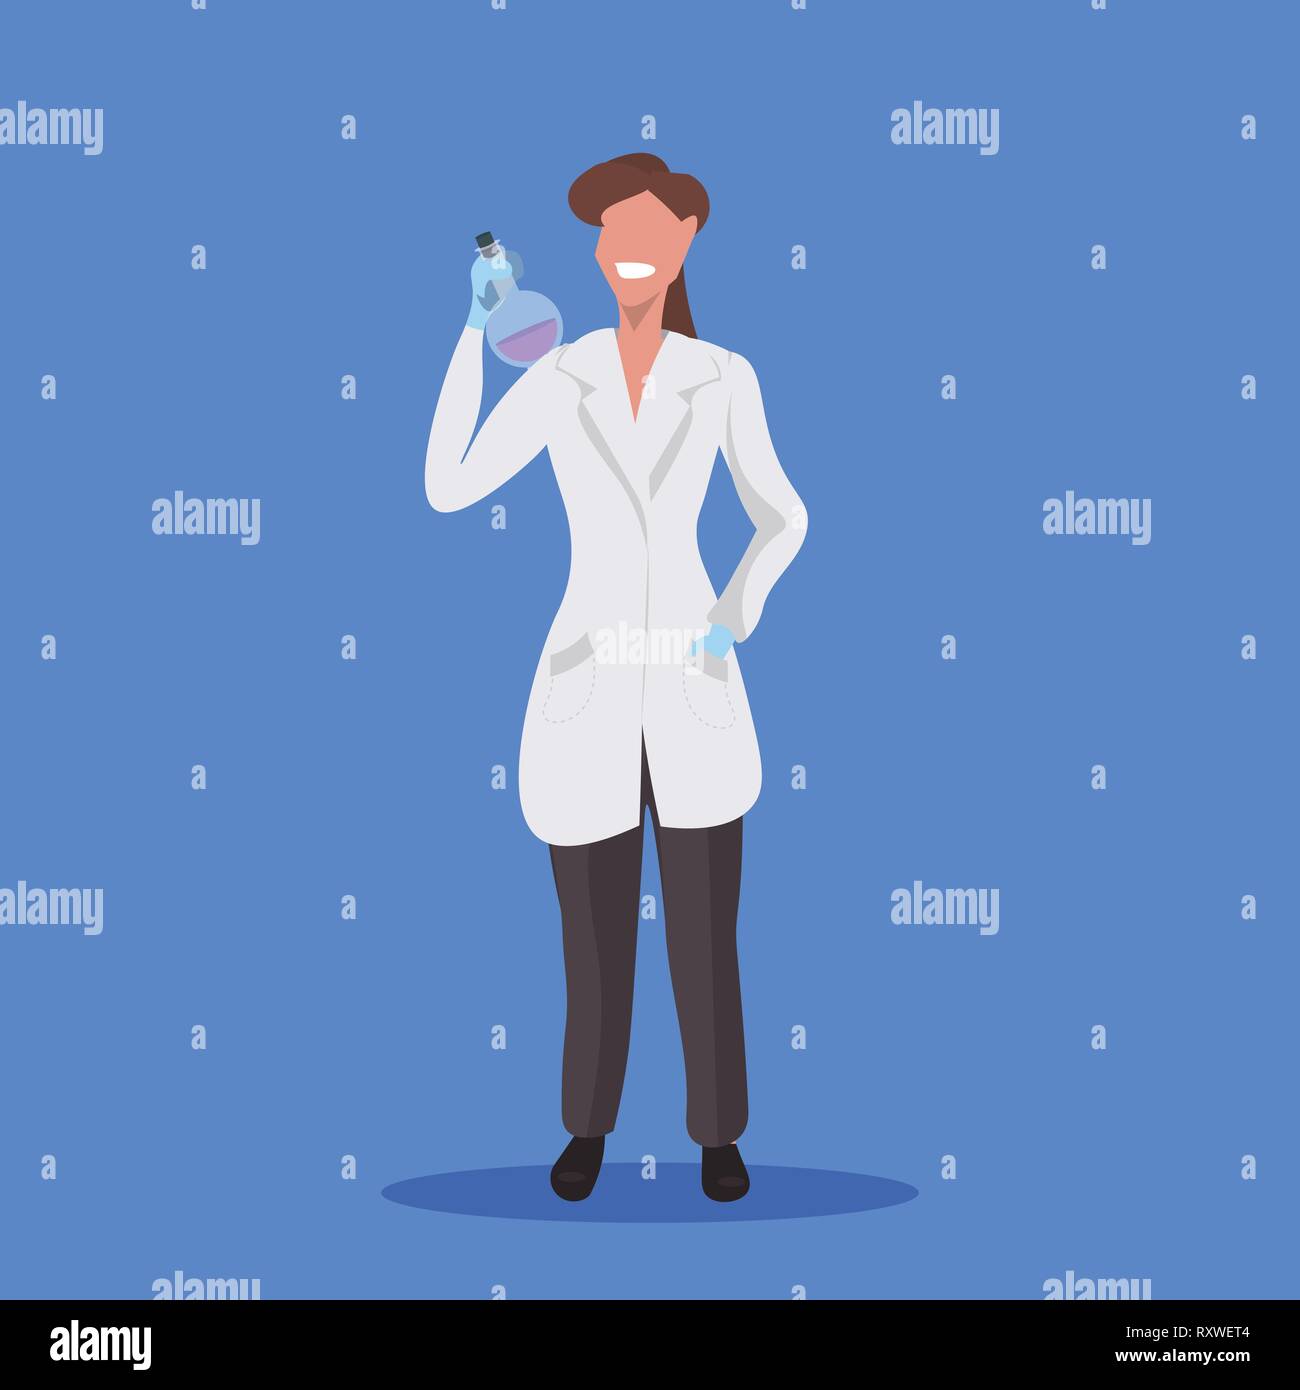 Wissenschaftlerin holding Reagenzglas Frau, Labor, Techniker, weiße Uniform medizinischer Arbeiter professionelle Besetzung Konzept blauer Hintergrund, flach Stock Vektor